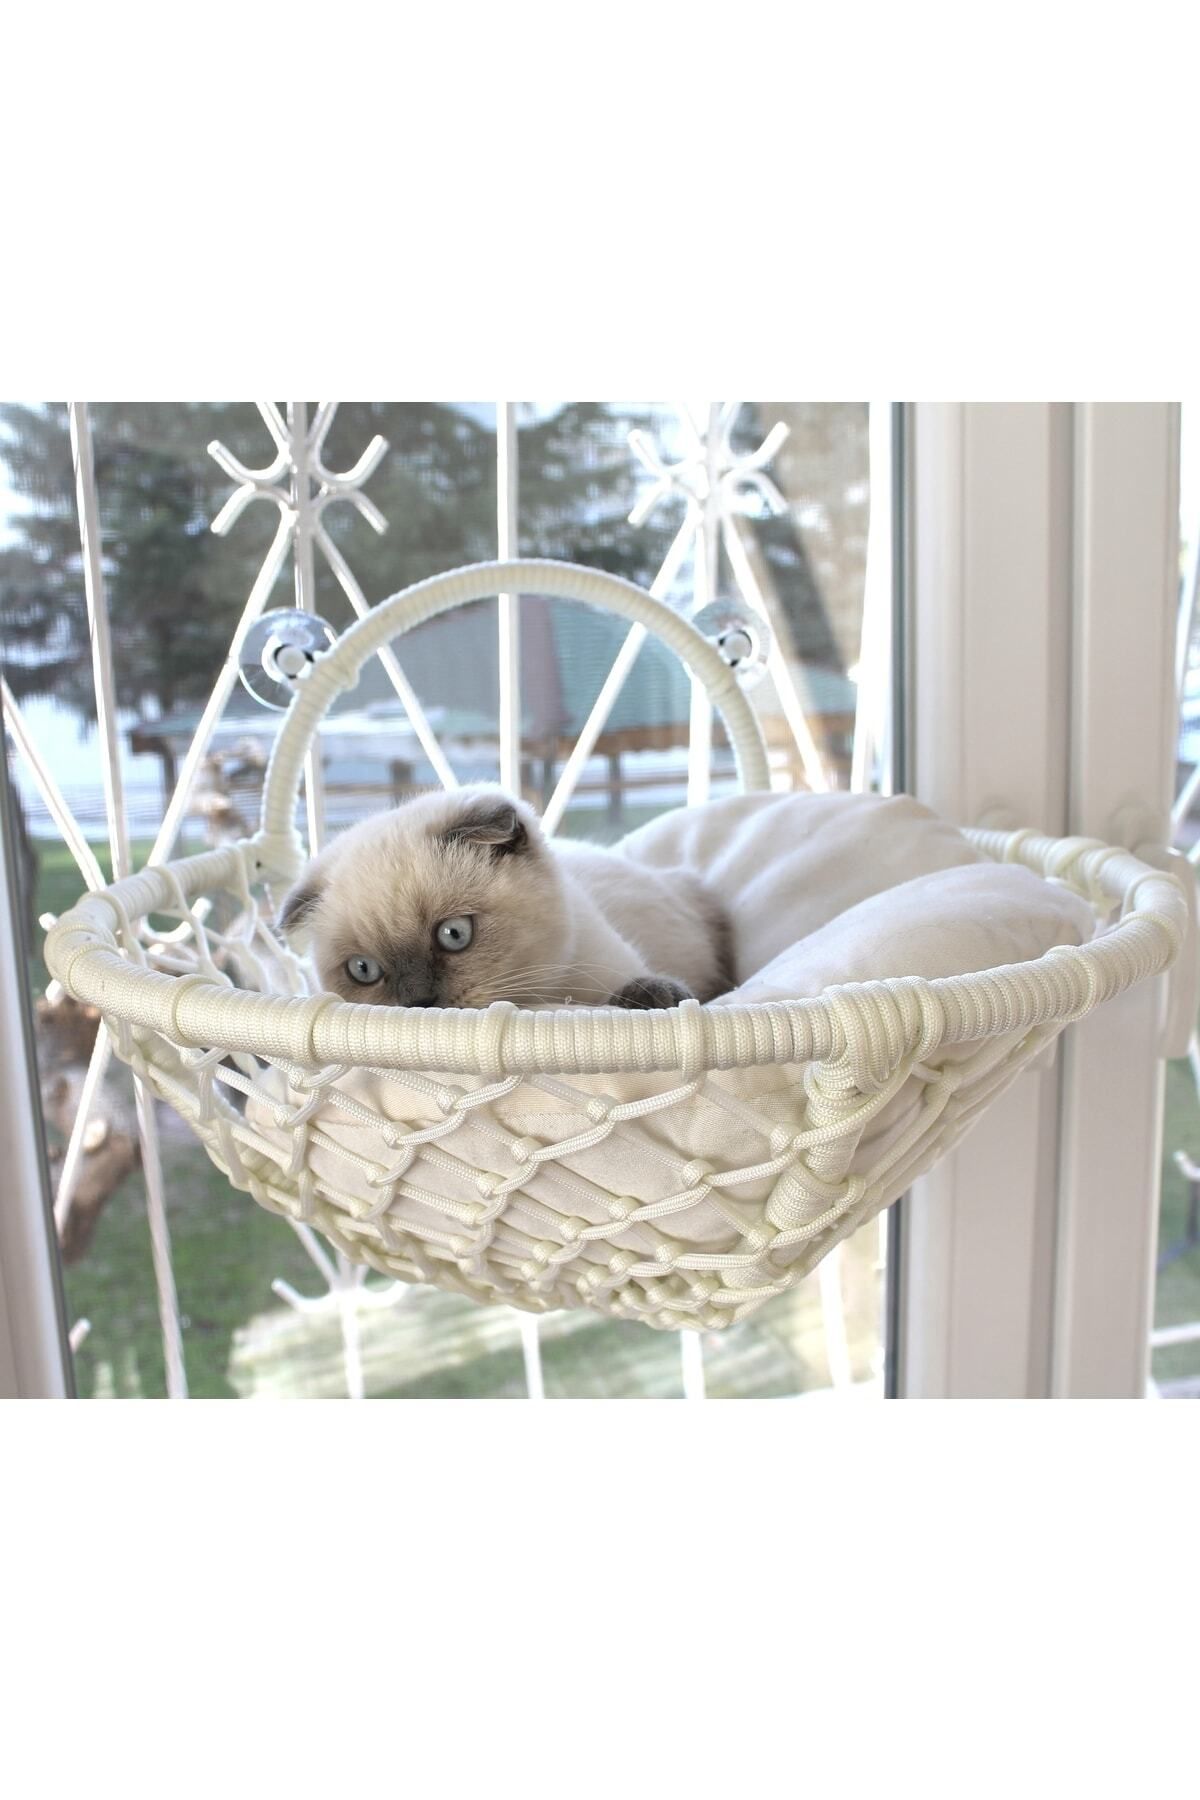 lüxperi Kedi Cam Yatağı & Vantuzlu Cam Yatağı & Kedi Pencere Yatağı